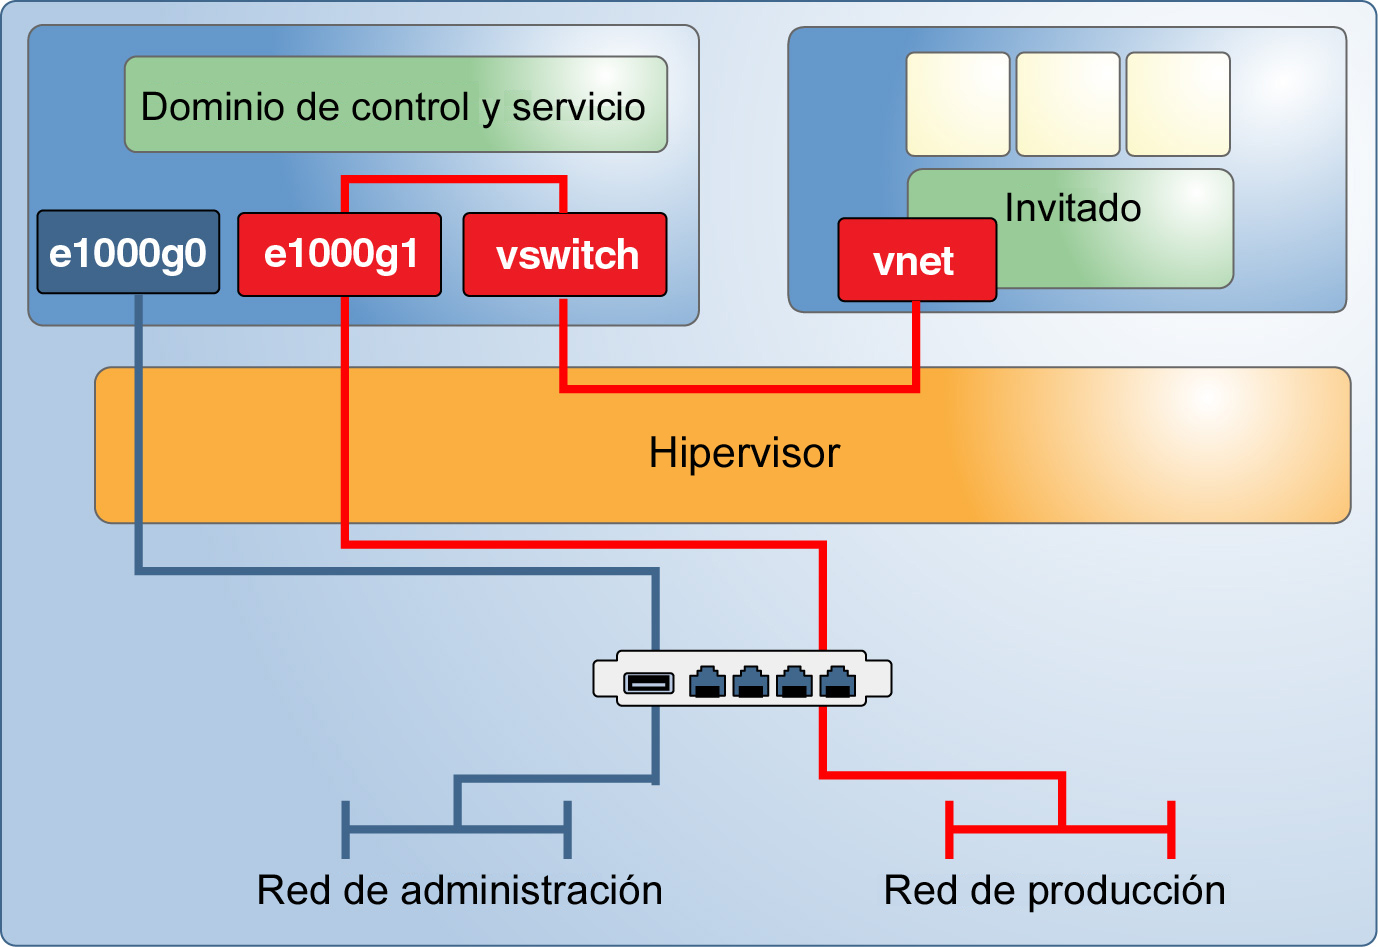 image:En el gráfico se muestra cómo las interfaces de red discreta admiten una red de gestión dedicada para el dominio de control y una red de producción para los dominios invitados.